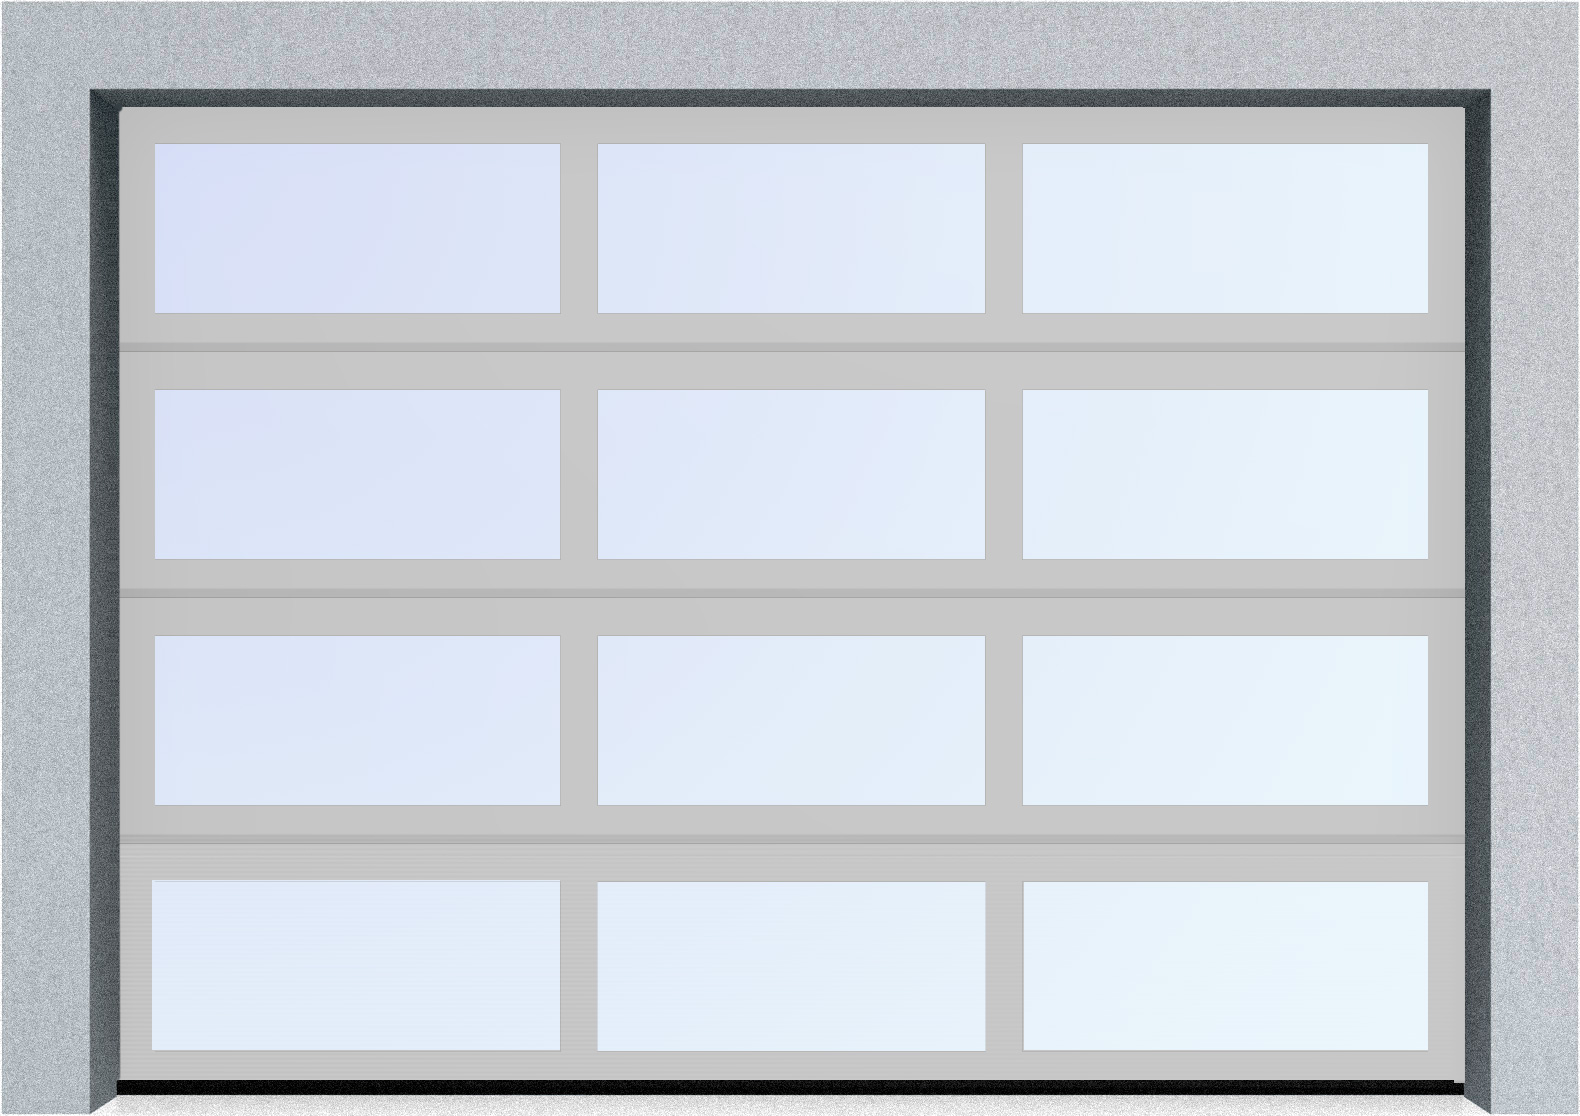  Секционные панорамные ворота серии AluTrend (АЛП) 2500х2500 нижняя панель стандартные цвета, фото 8 